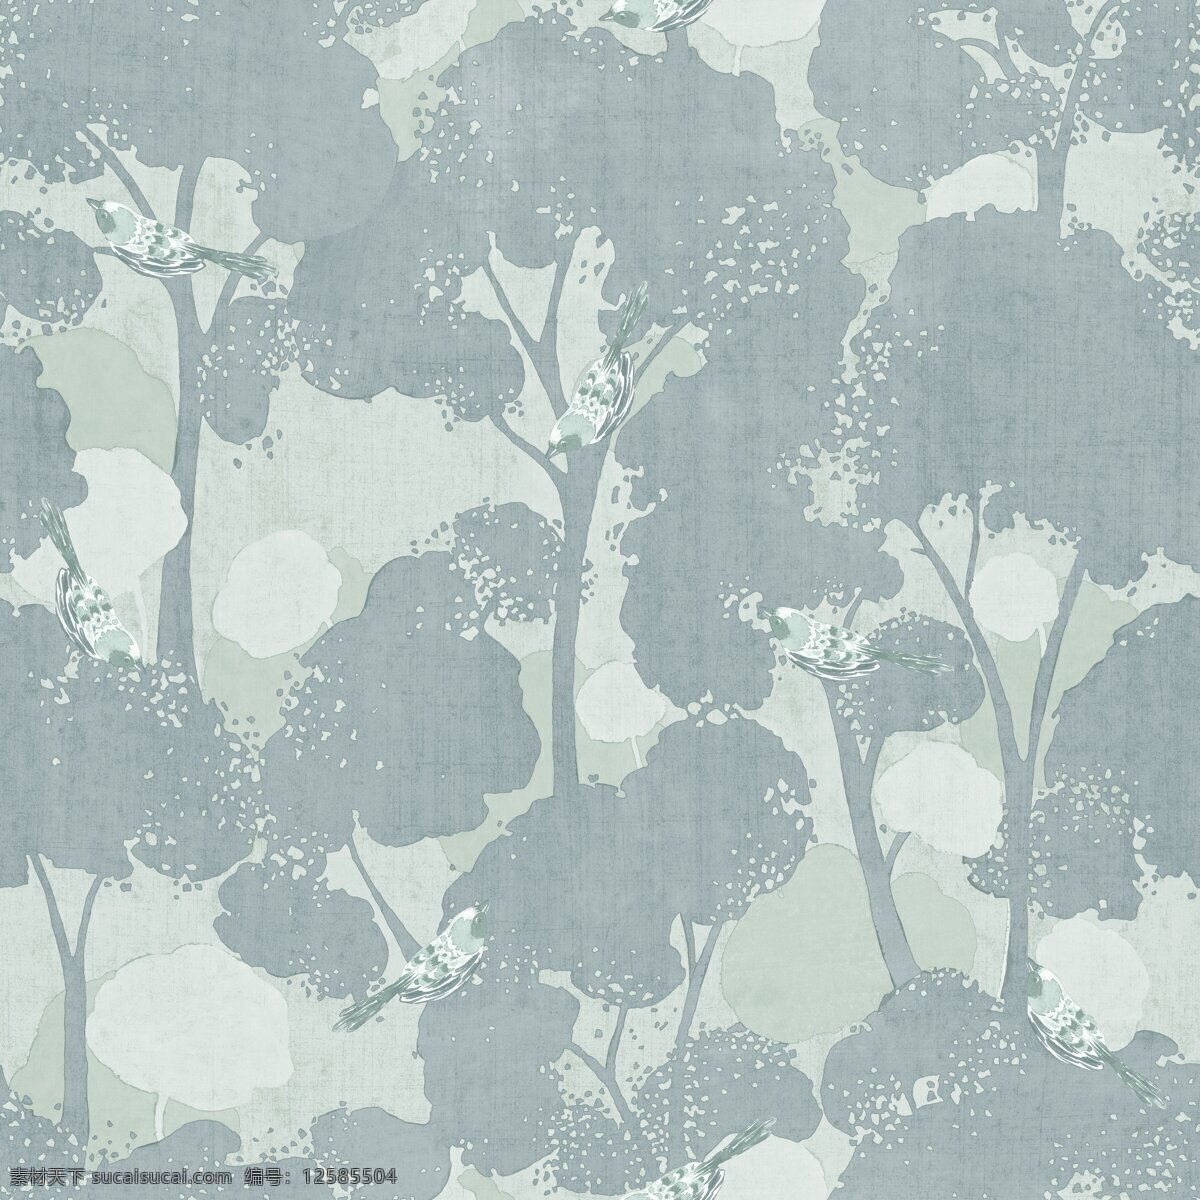 简约 清新 灰 蓝色 树林 壁纸 图案 壁纸图案 灰蓝色花纹 浅色斑点 植物元素 自然元素